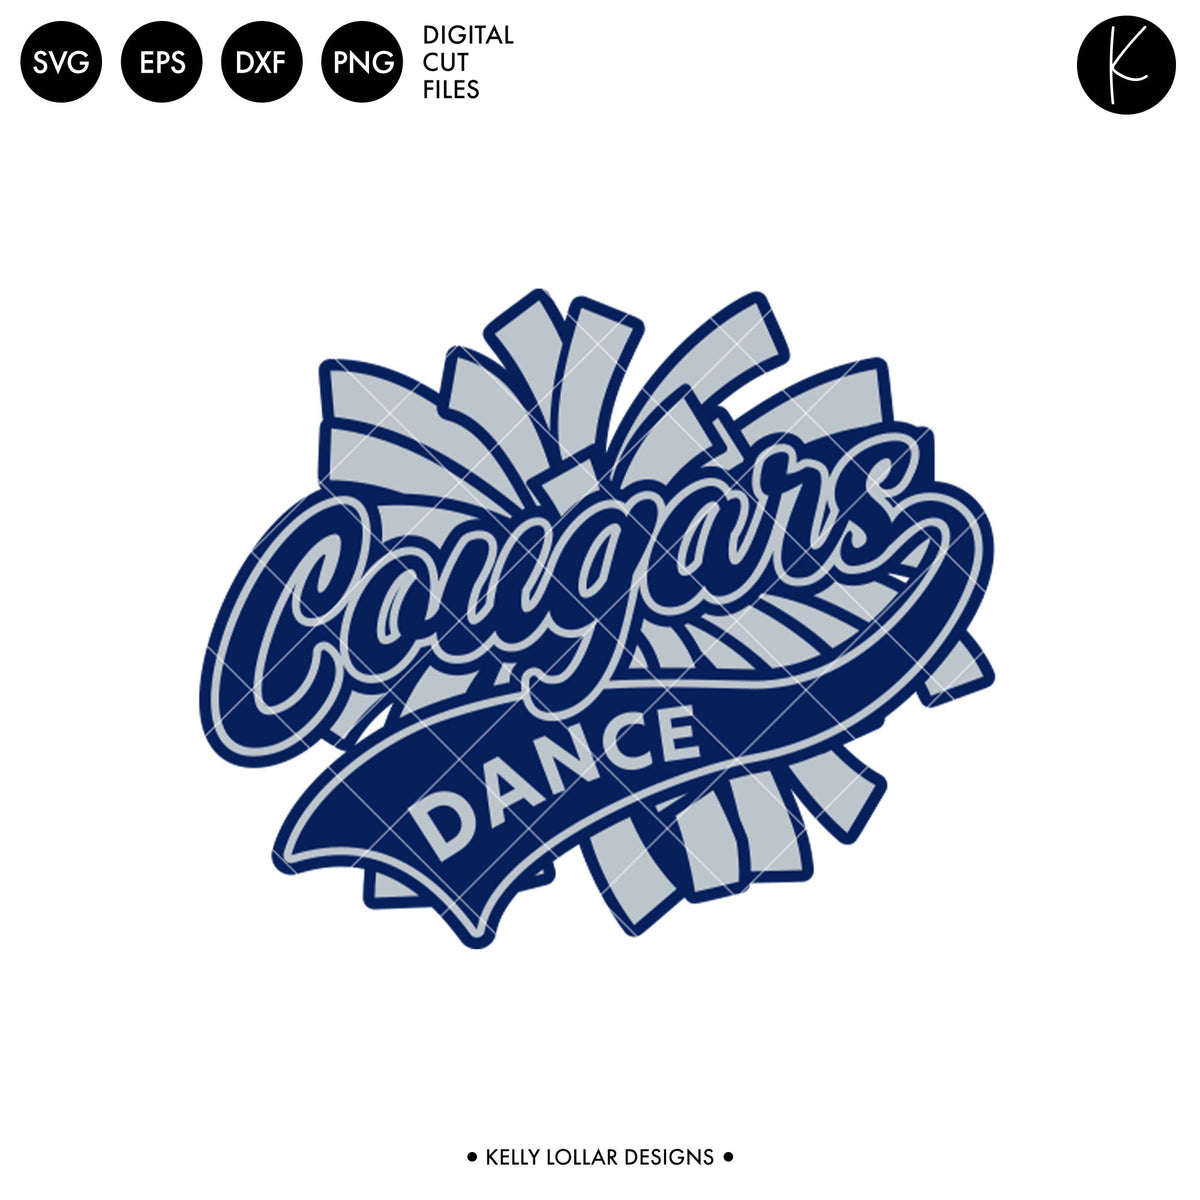 Cougars Dance Bundle | SVG DXF EPS PNG Cut Files